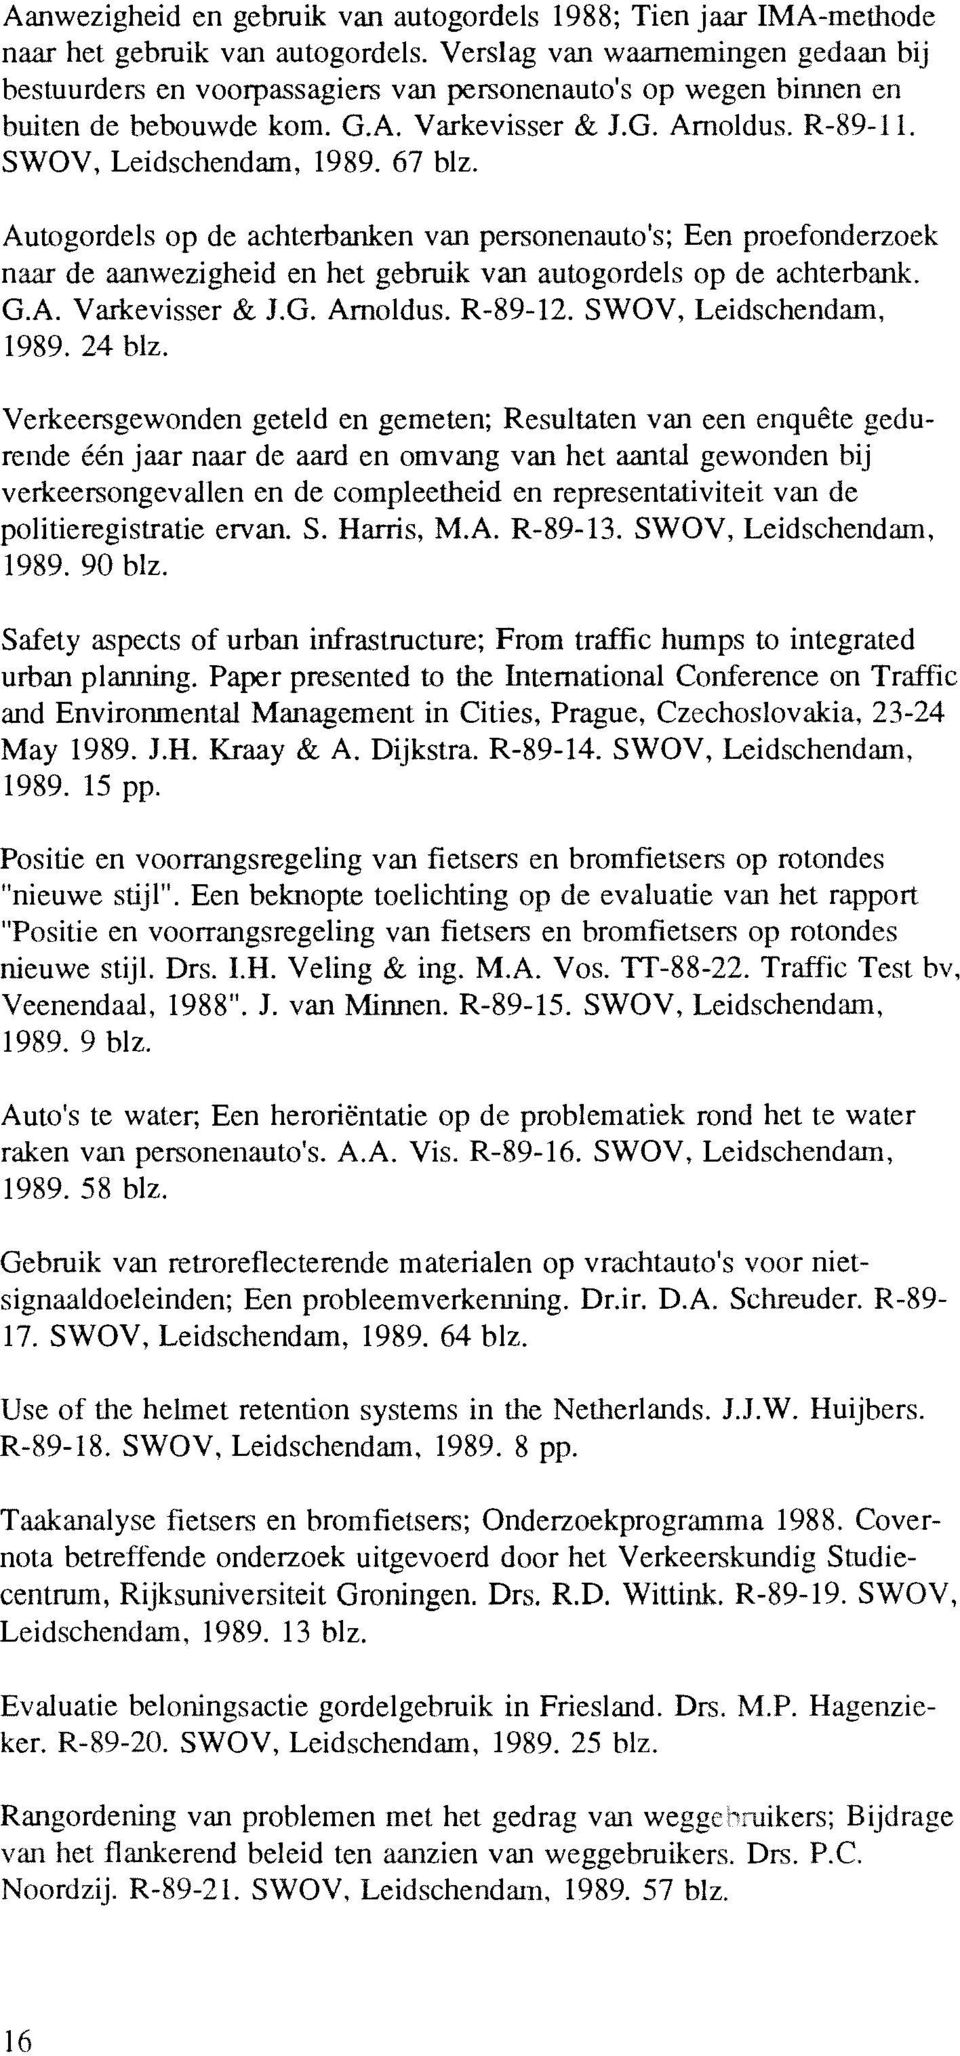 67 blz. Autogordels op de achterbanken van personenauto's; Een proefonderzoek naar de aanwezigheid en het gebruik van autogordels op de achterbank. G.A. Varkevisser & J.G. Arnoldus. R-89-12.